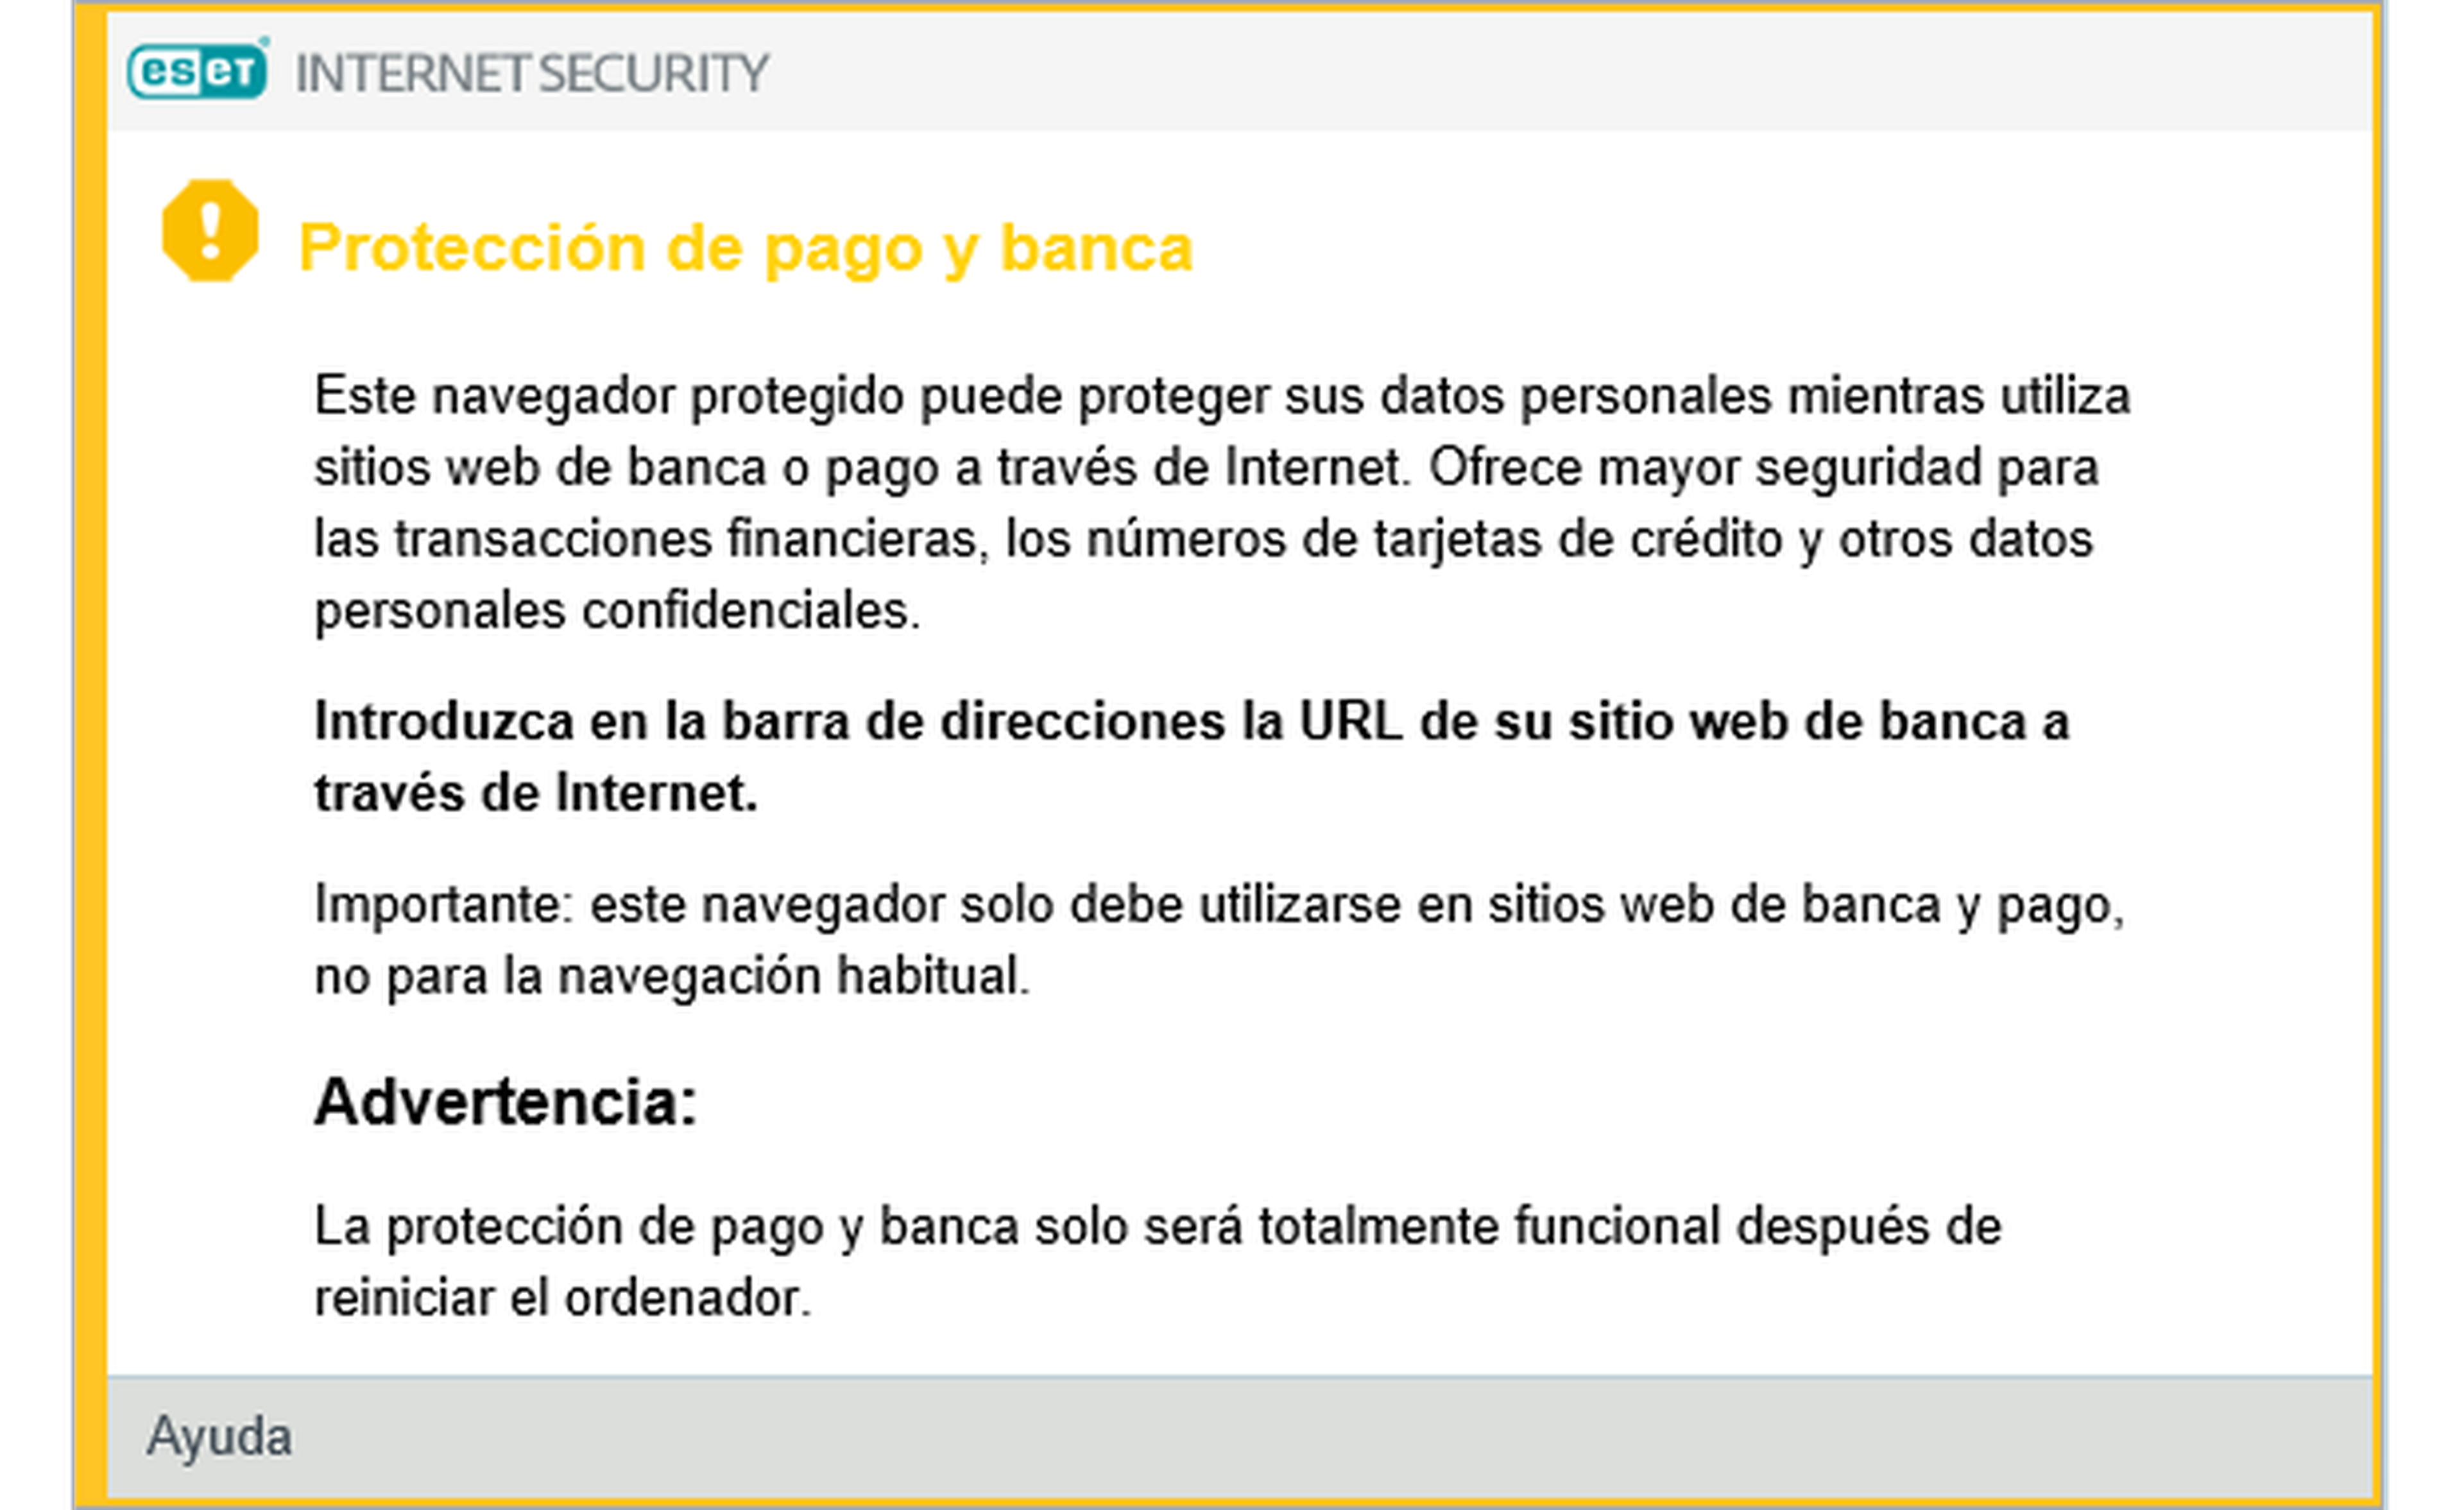 ESET Internet Security 2018 Protección de pago y banca online